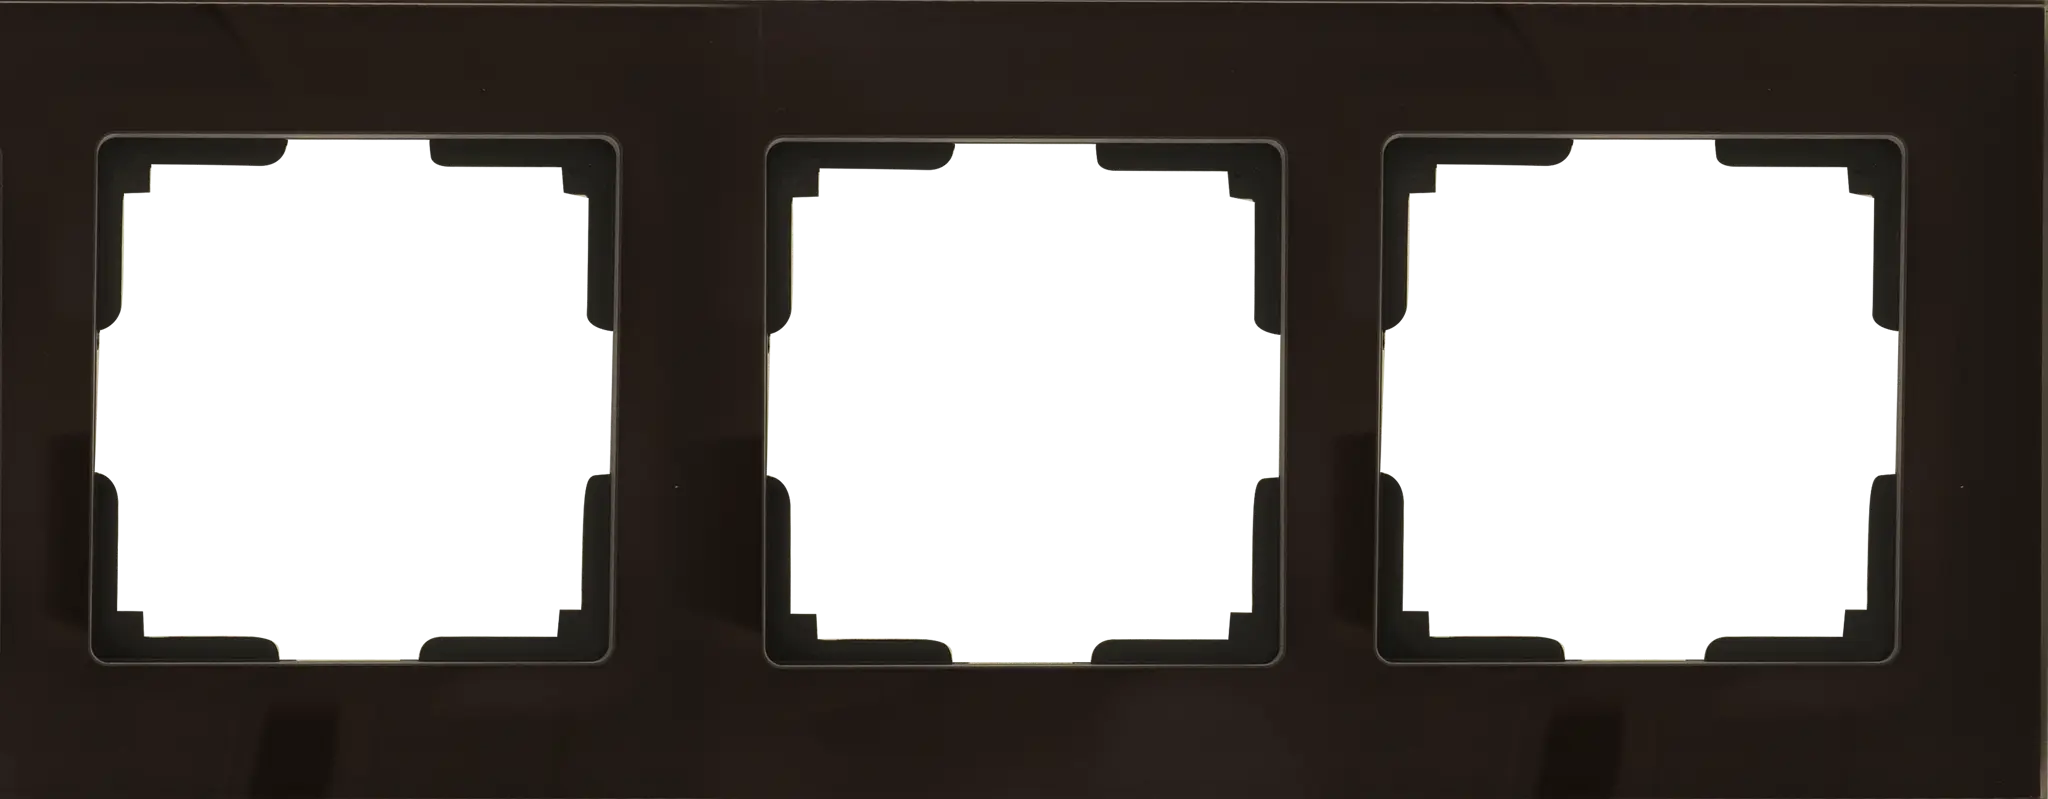 Рамка для розеток и выключателей Werkel Favorit 3 поста стекло цвет коричневый рамка luxar art на 1 пост стекло мокко 4606400620617